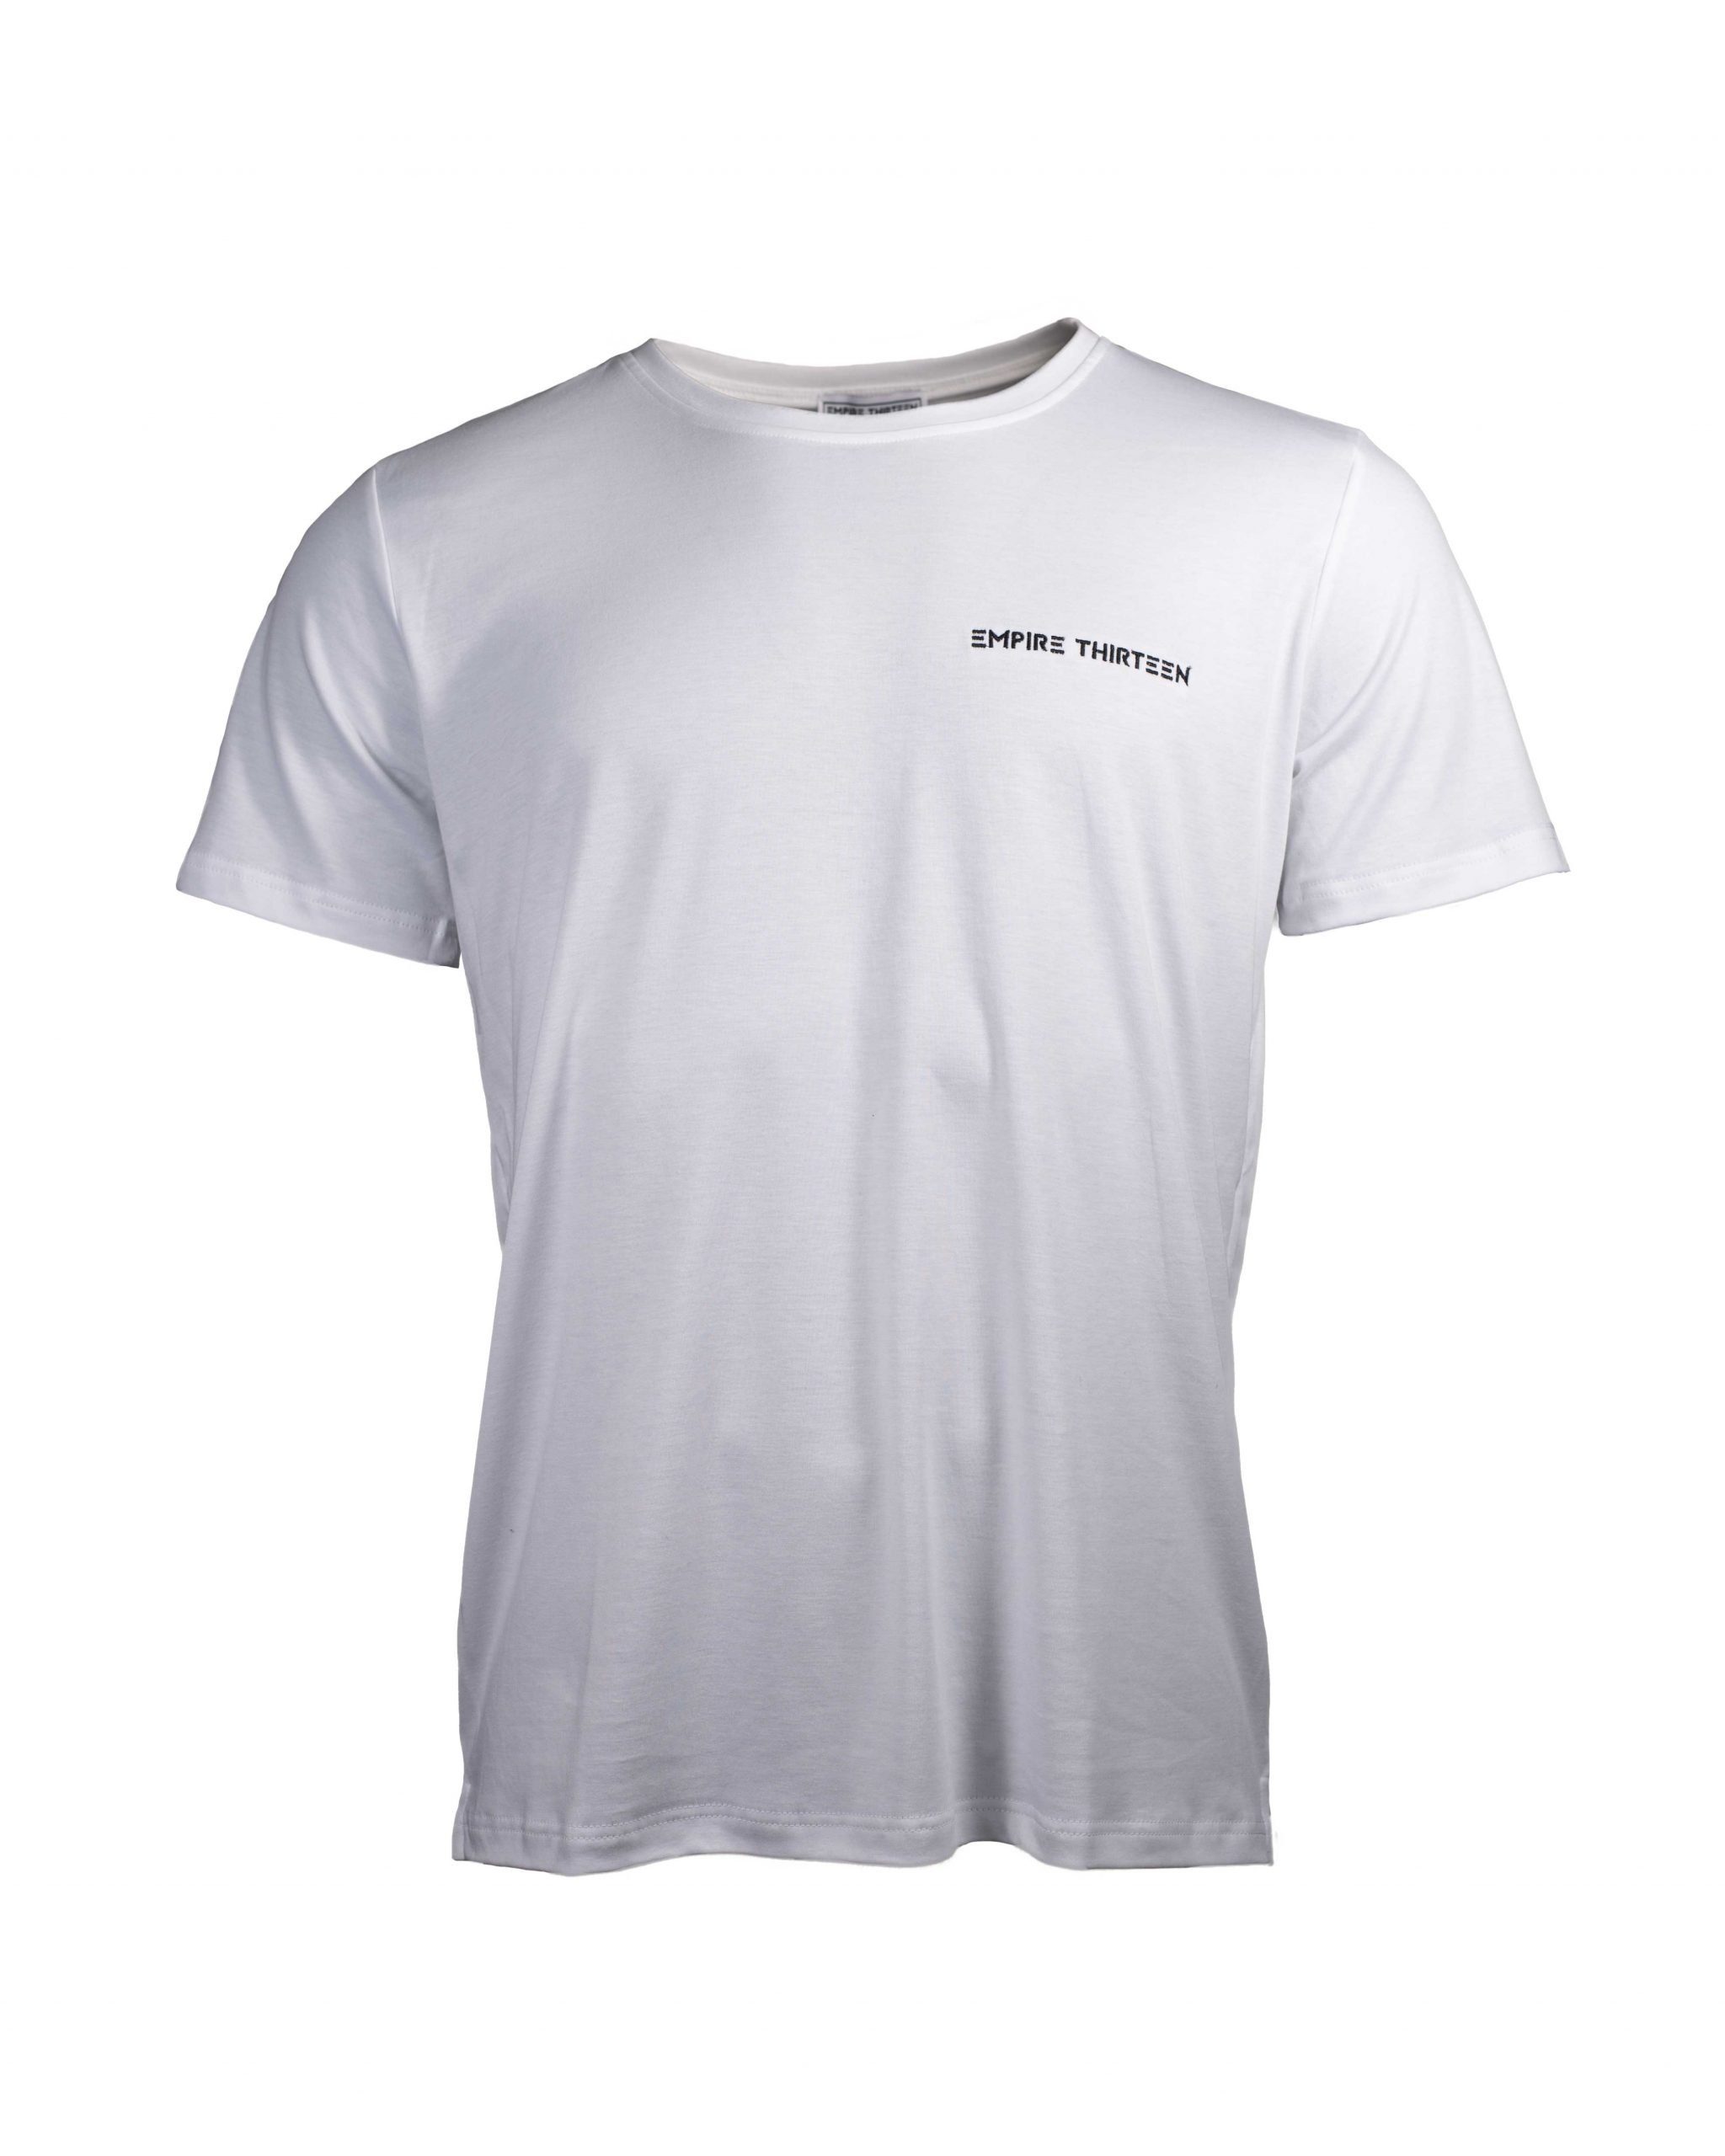 EMPIRE-THIRTEEN T-Shirt SHIRT Weiß Stickerei MEN BASIC "EMPIRE-THIRTEEN"